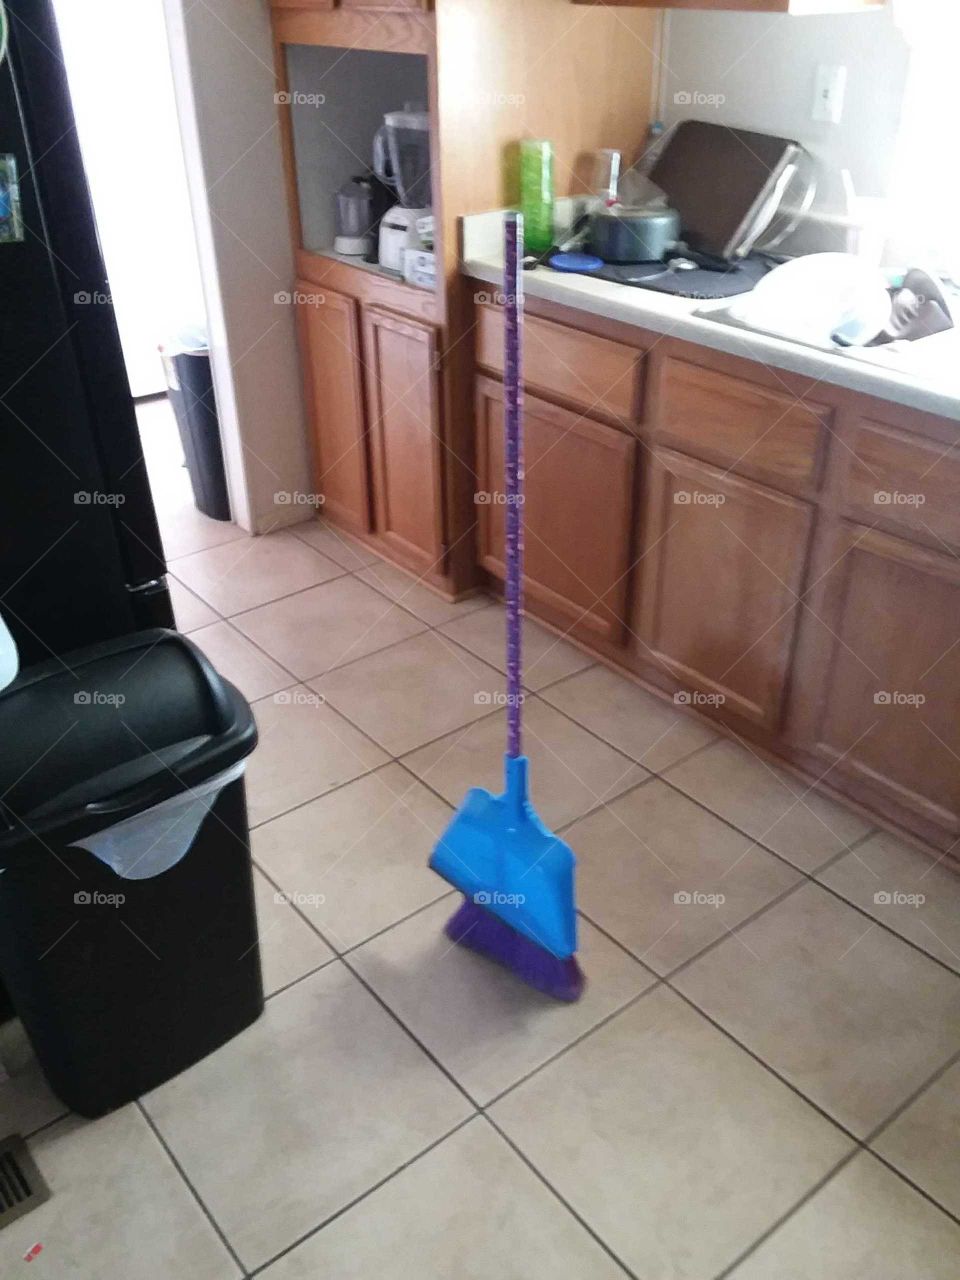 stand alone broom